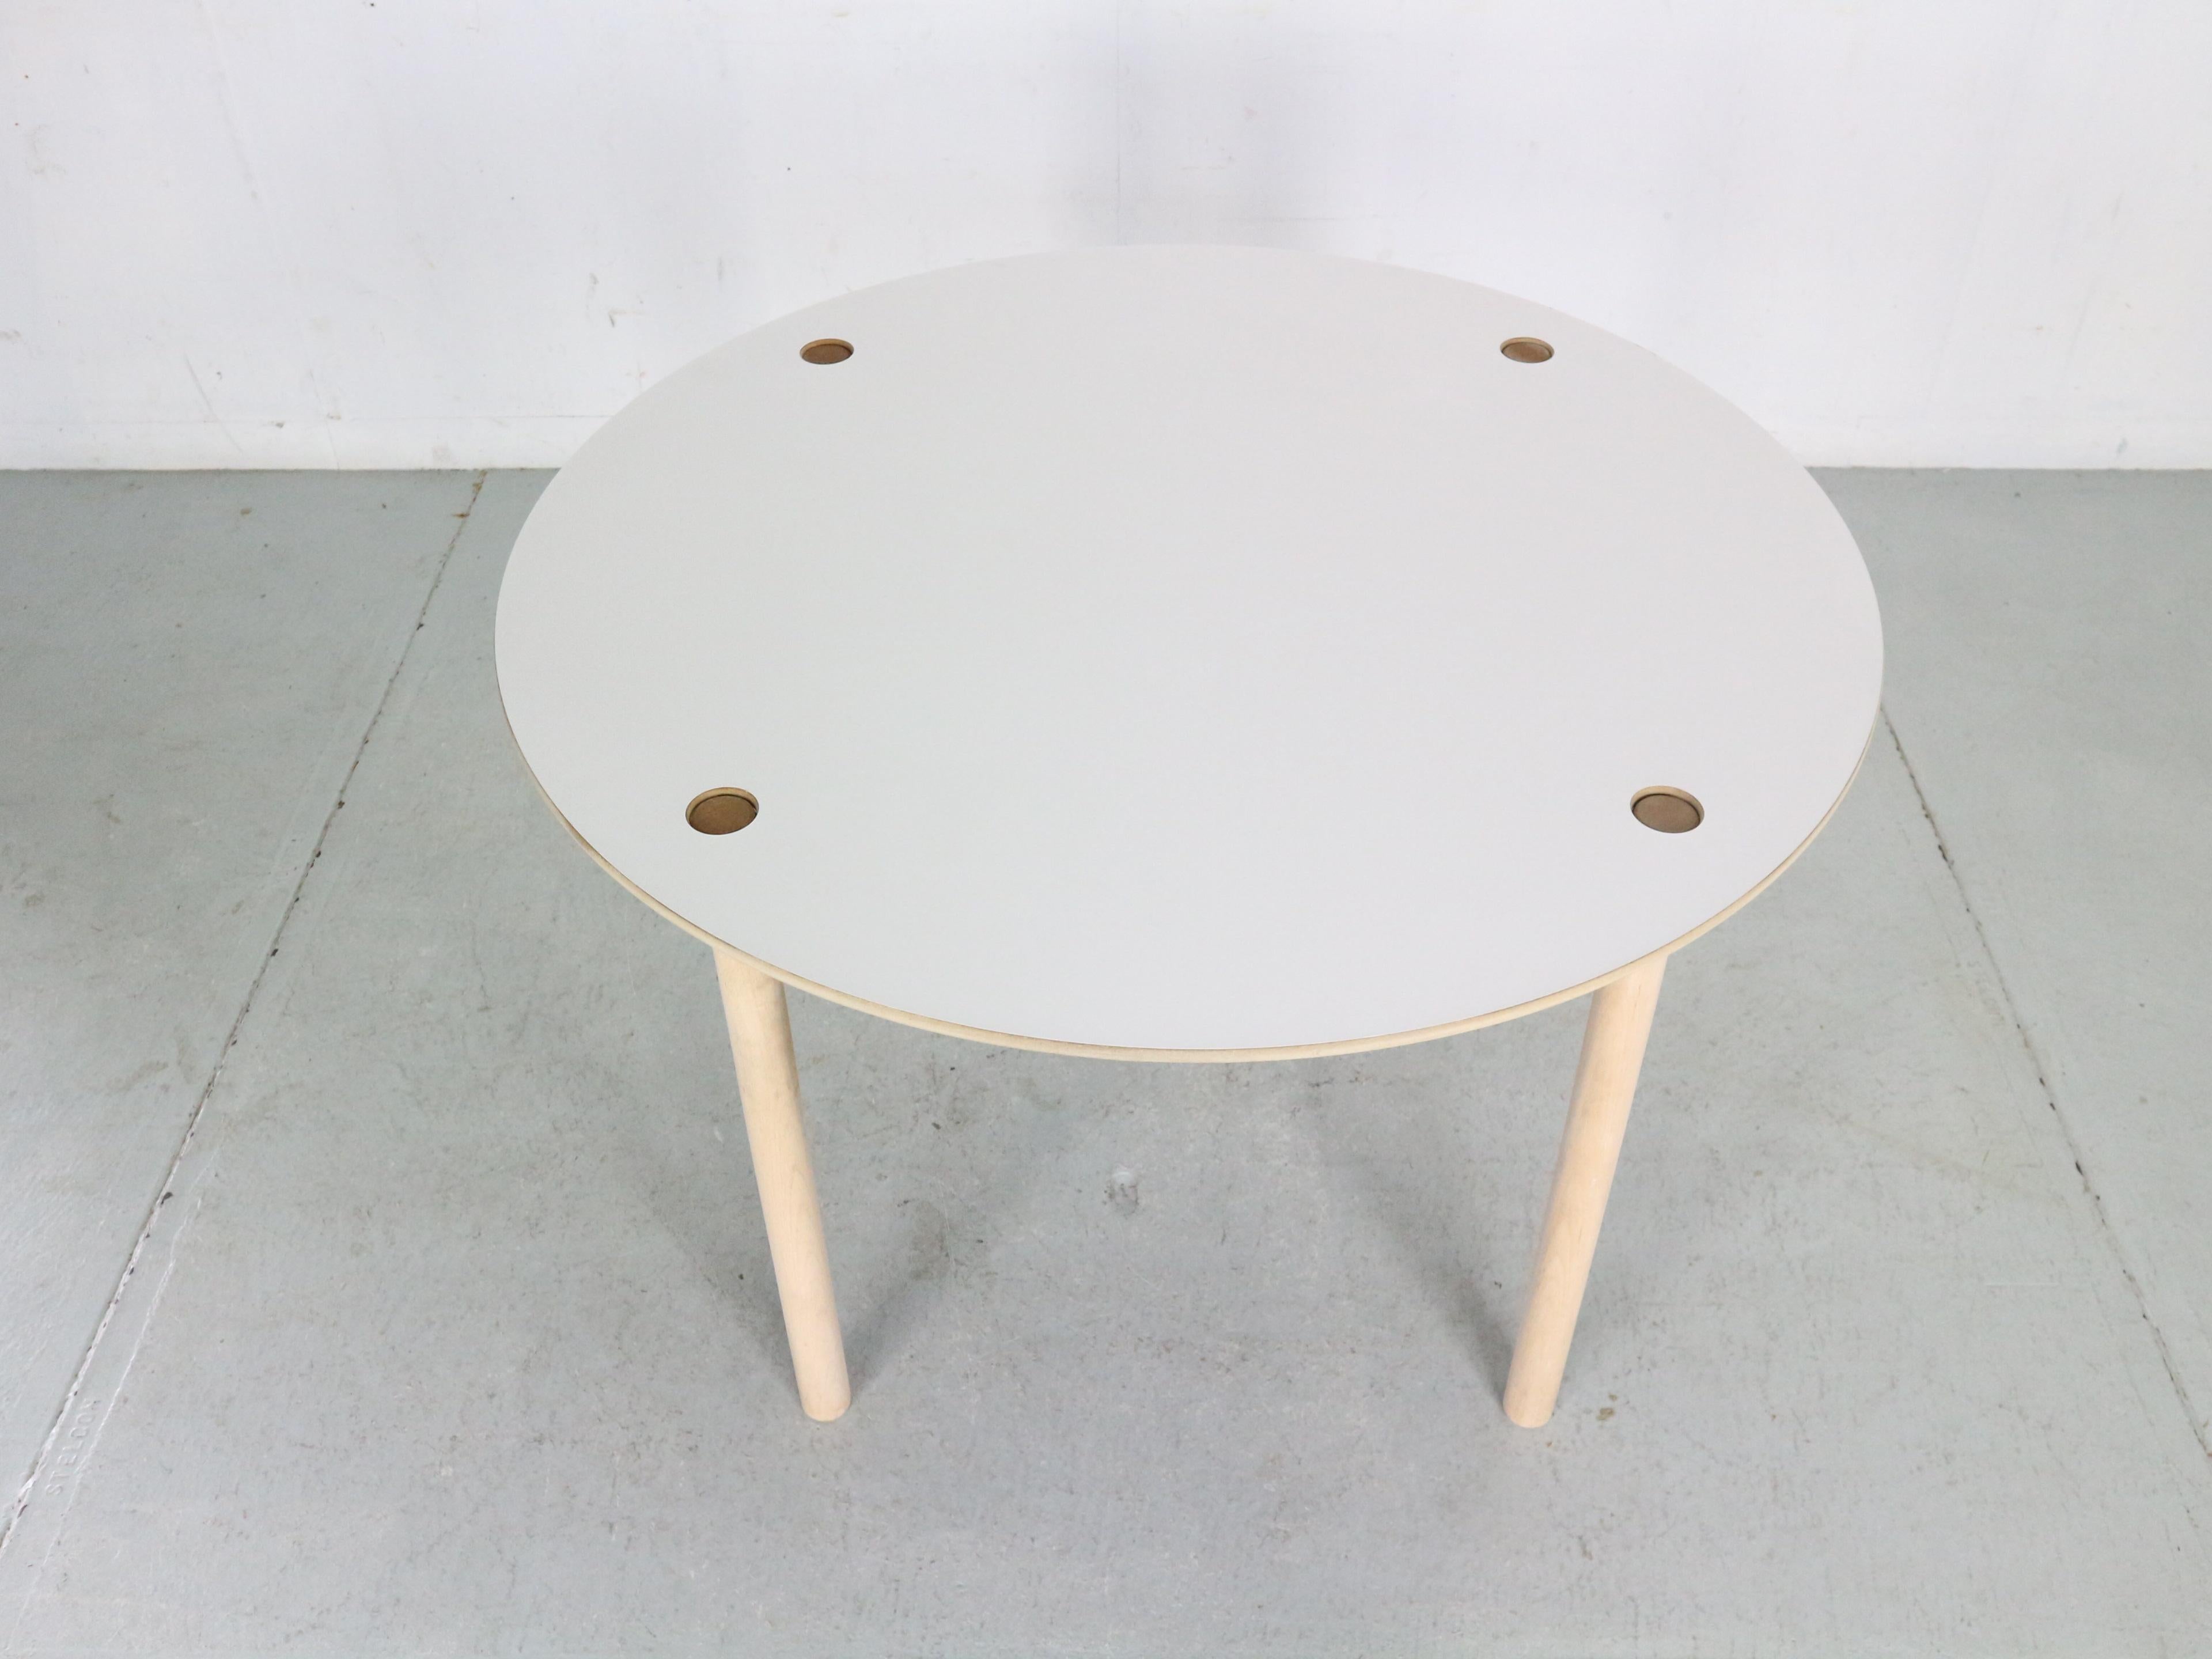 Mid-Century Modern Zeitraum sehr einzigartig Flip-Top runden Esstisch von berühmten dänischen Möbeldesigner Børge Mogensen entworfen und von FDB Møbler in 1950's circa hergestellt.

Der Tisch ist aus massivem Eichenholz gefertigt und die Flip-Top